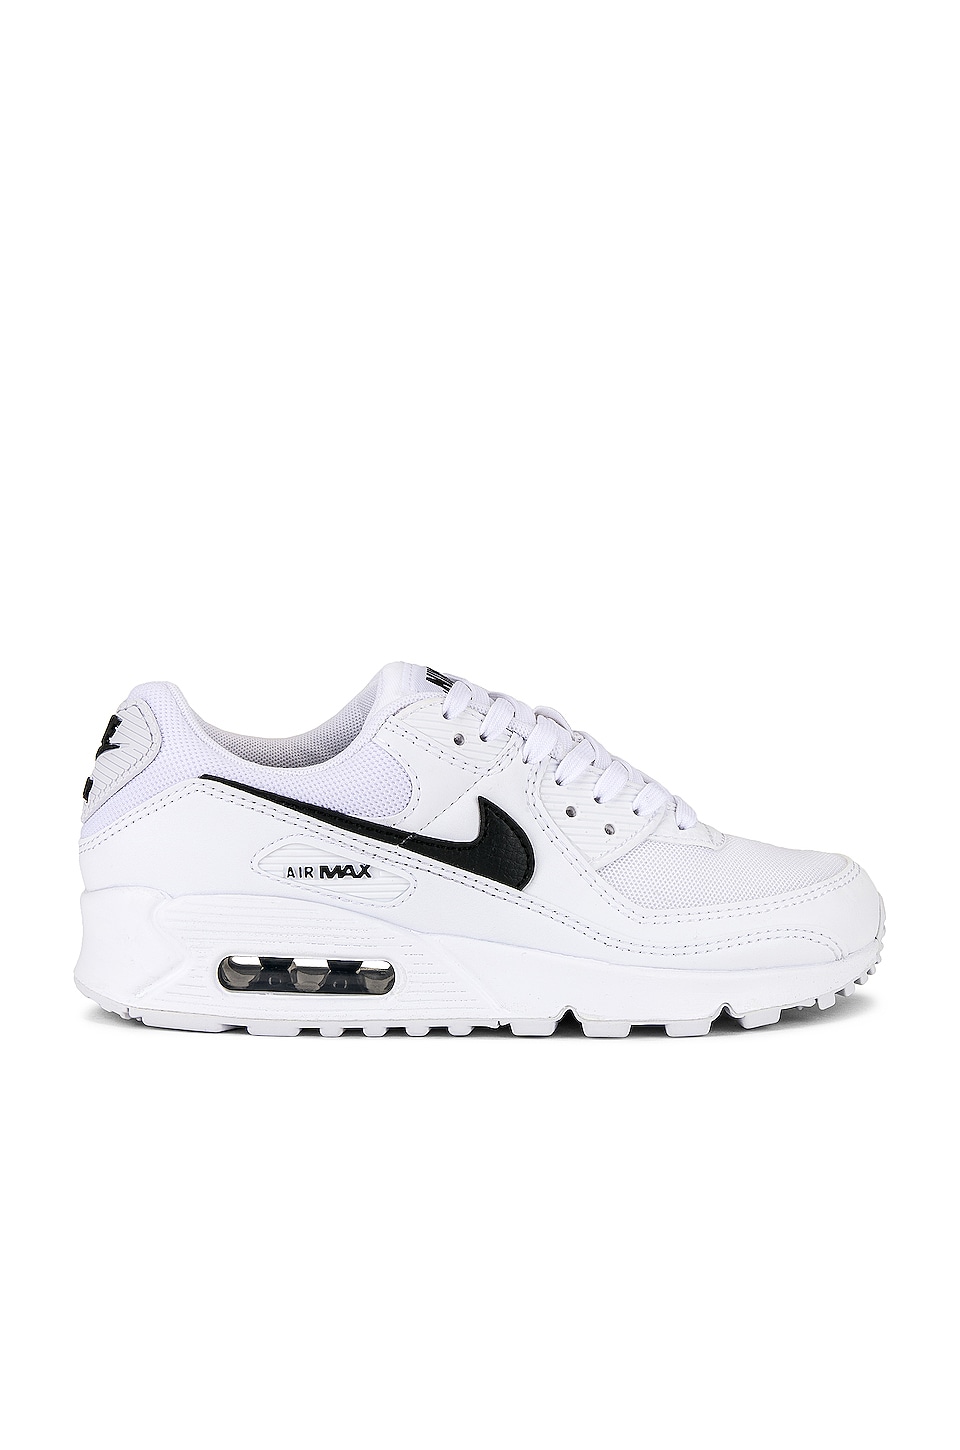 Nike Air Max 90 Sneaker in White, Black, & White | REVOLVE